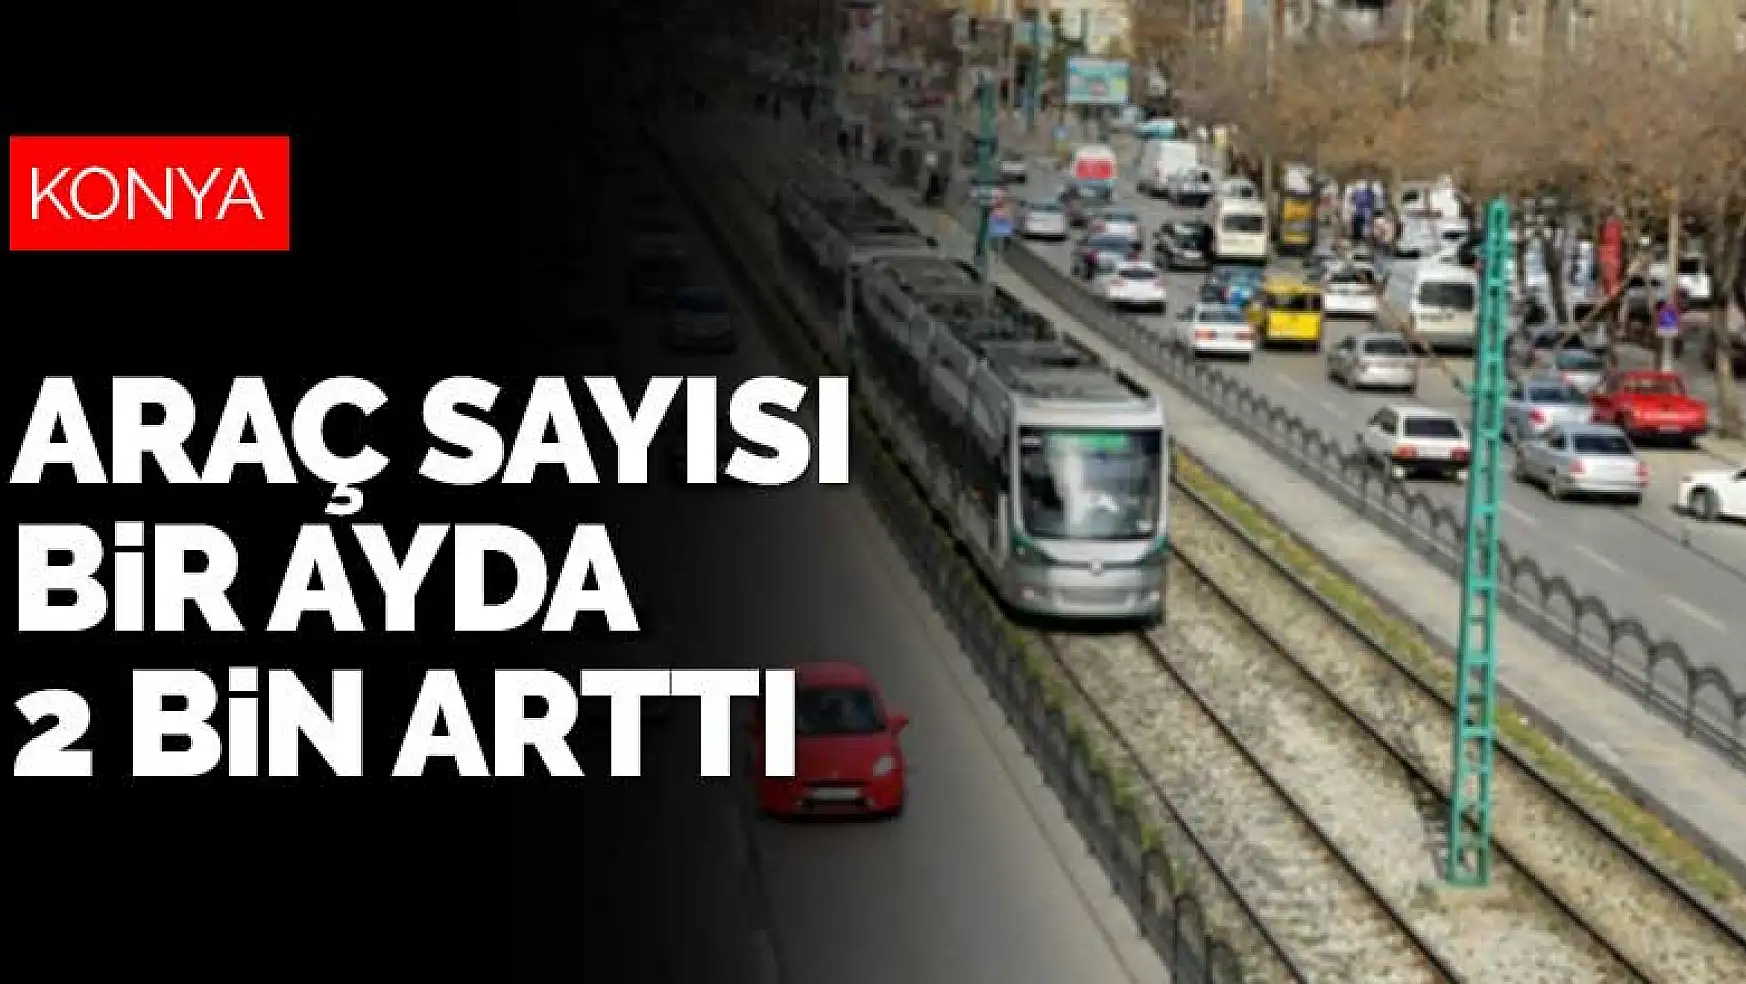 Konya'daki araç sayısı bir ayda 2 bin arttı